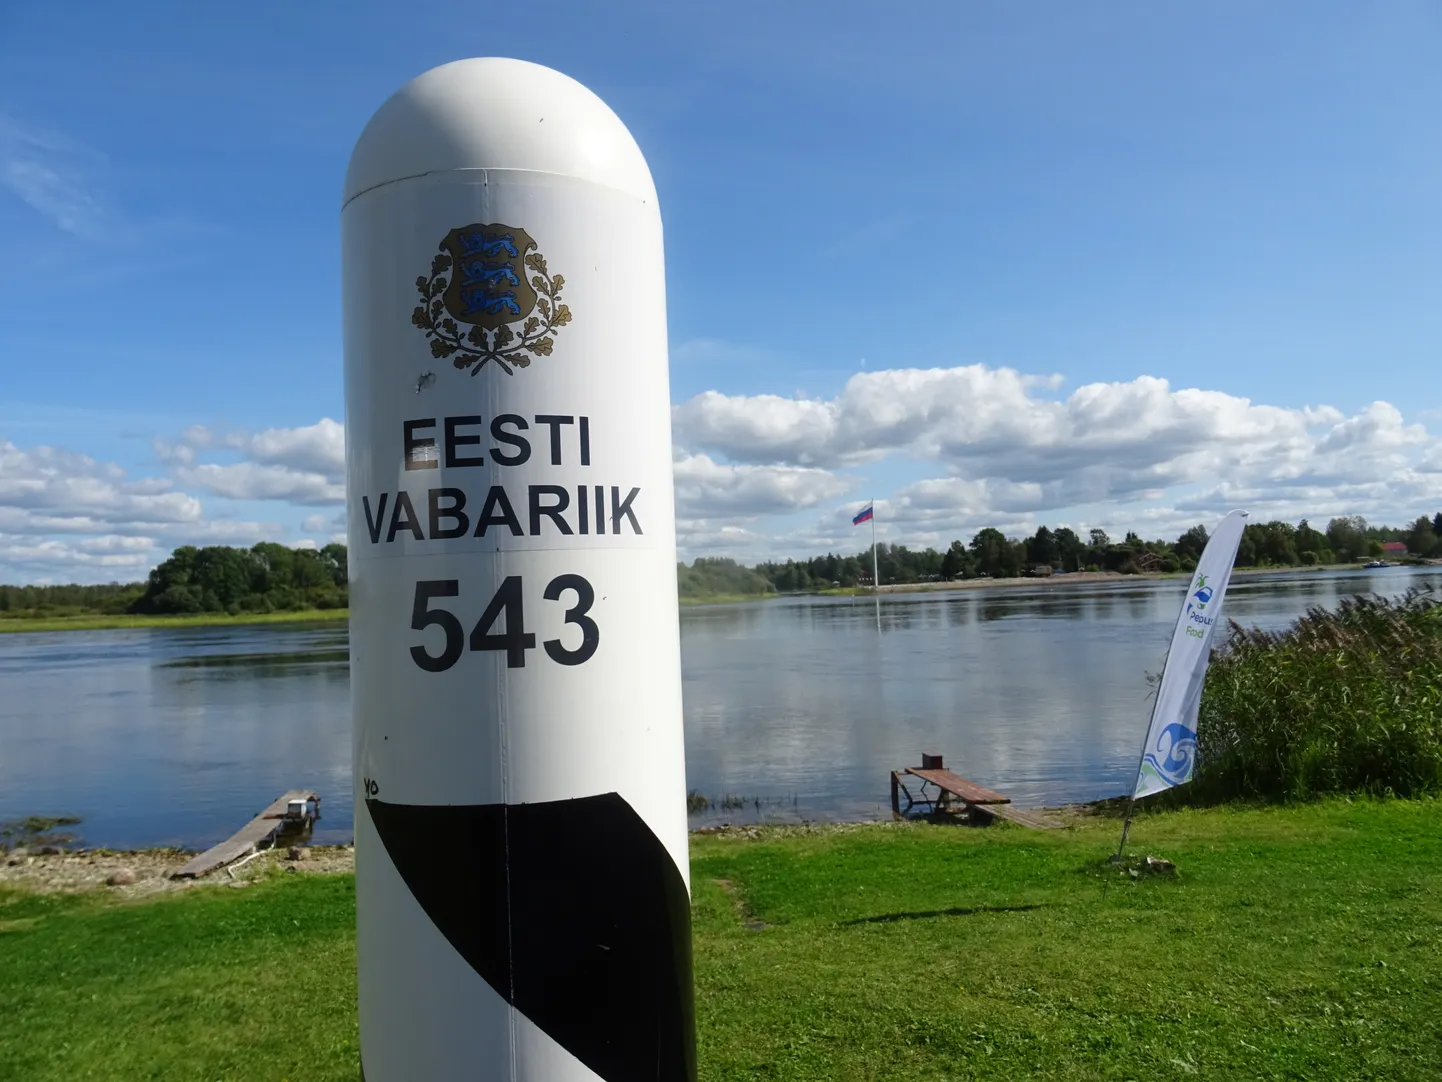 Eesti-Vene kontrolljoon kulgeb enamasti piki Narva jõe keskkohta, mille ületamine on seadusega keelatud. Siiski eeldab keeld aga ka piirijoone korrektset tähistamist, et liiklejatel oleks üheselt selge, kus see kulgeb.